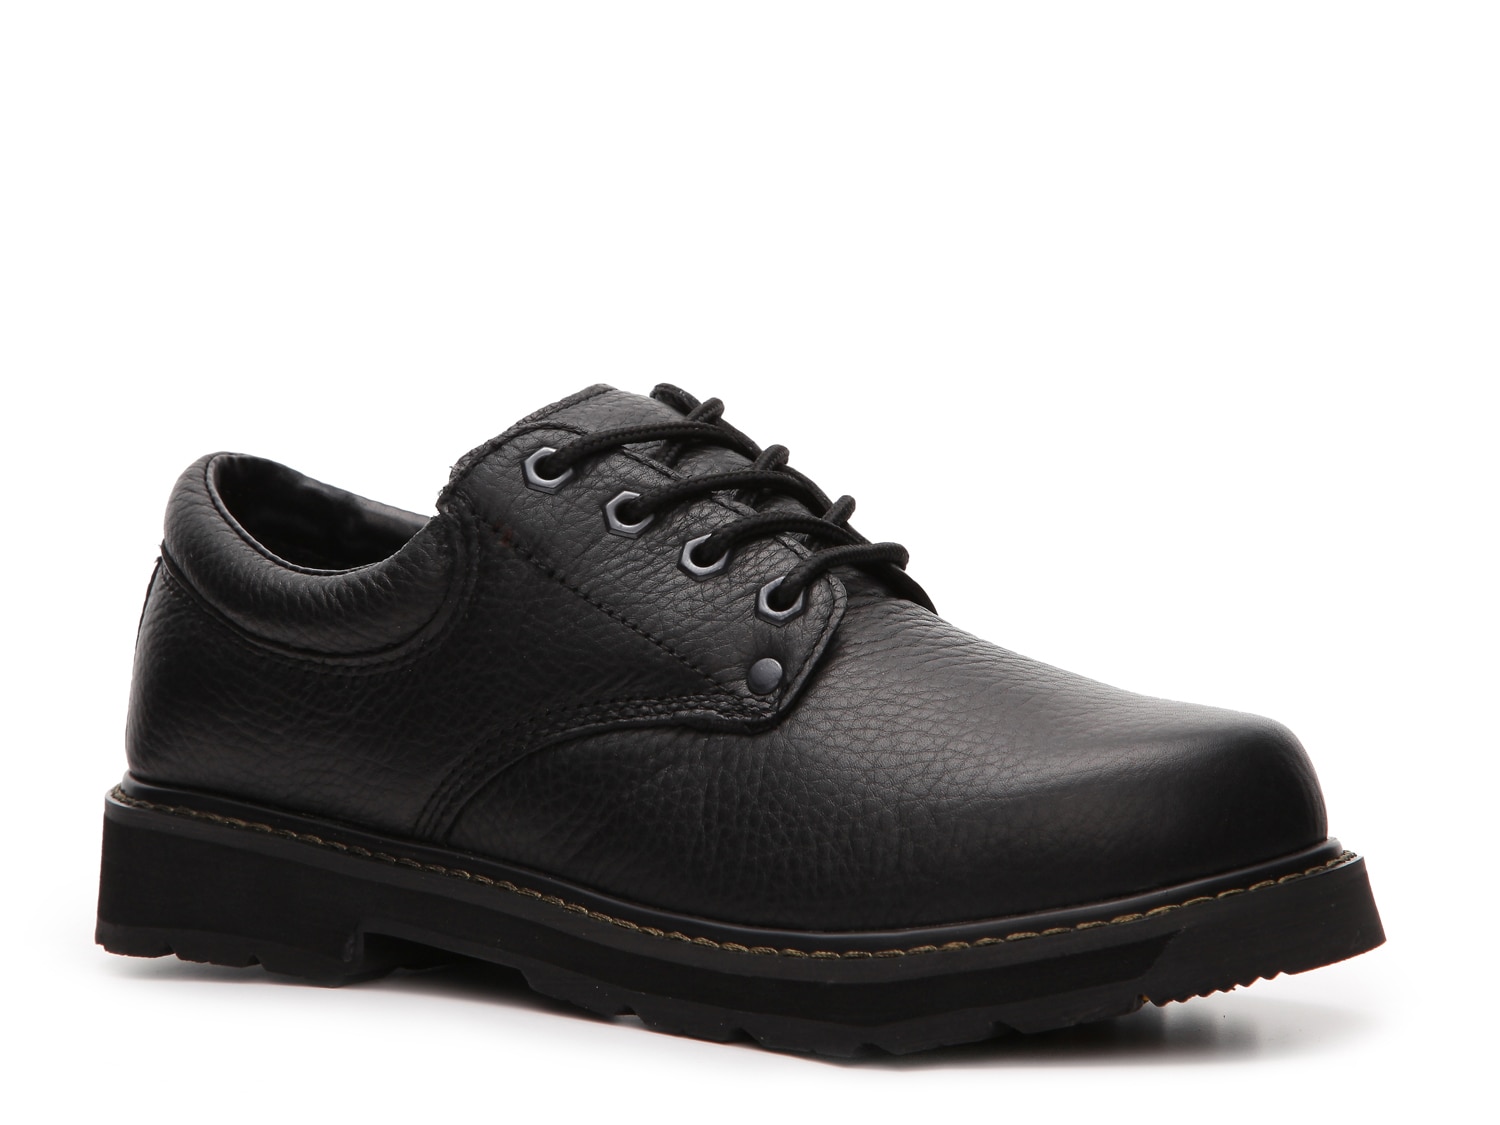 dr scholl's men's slip resistant shoes